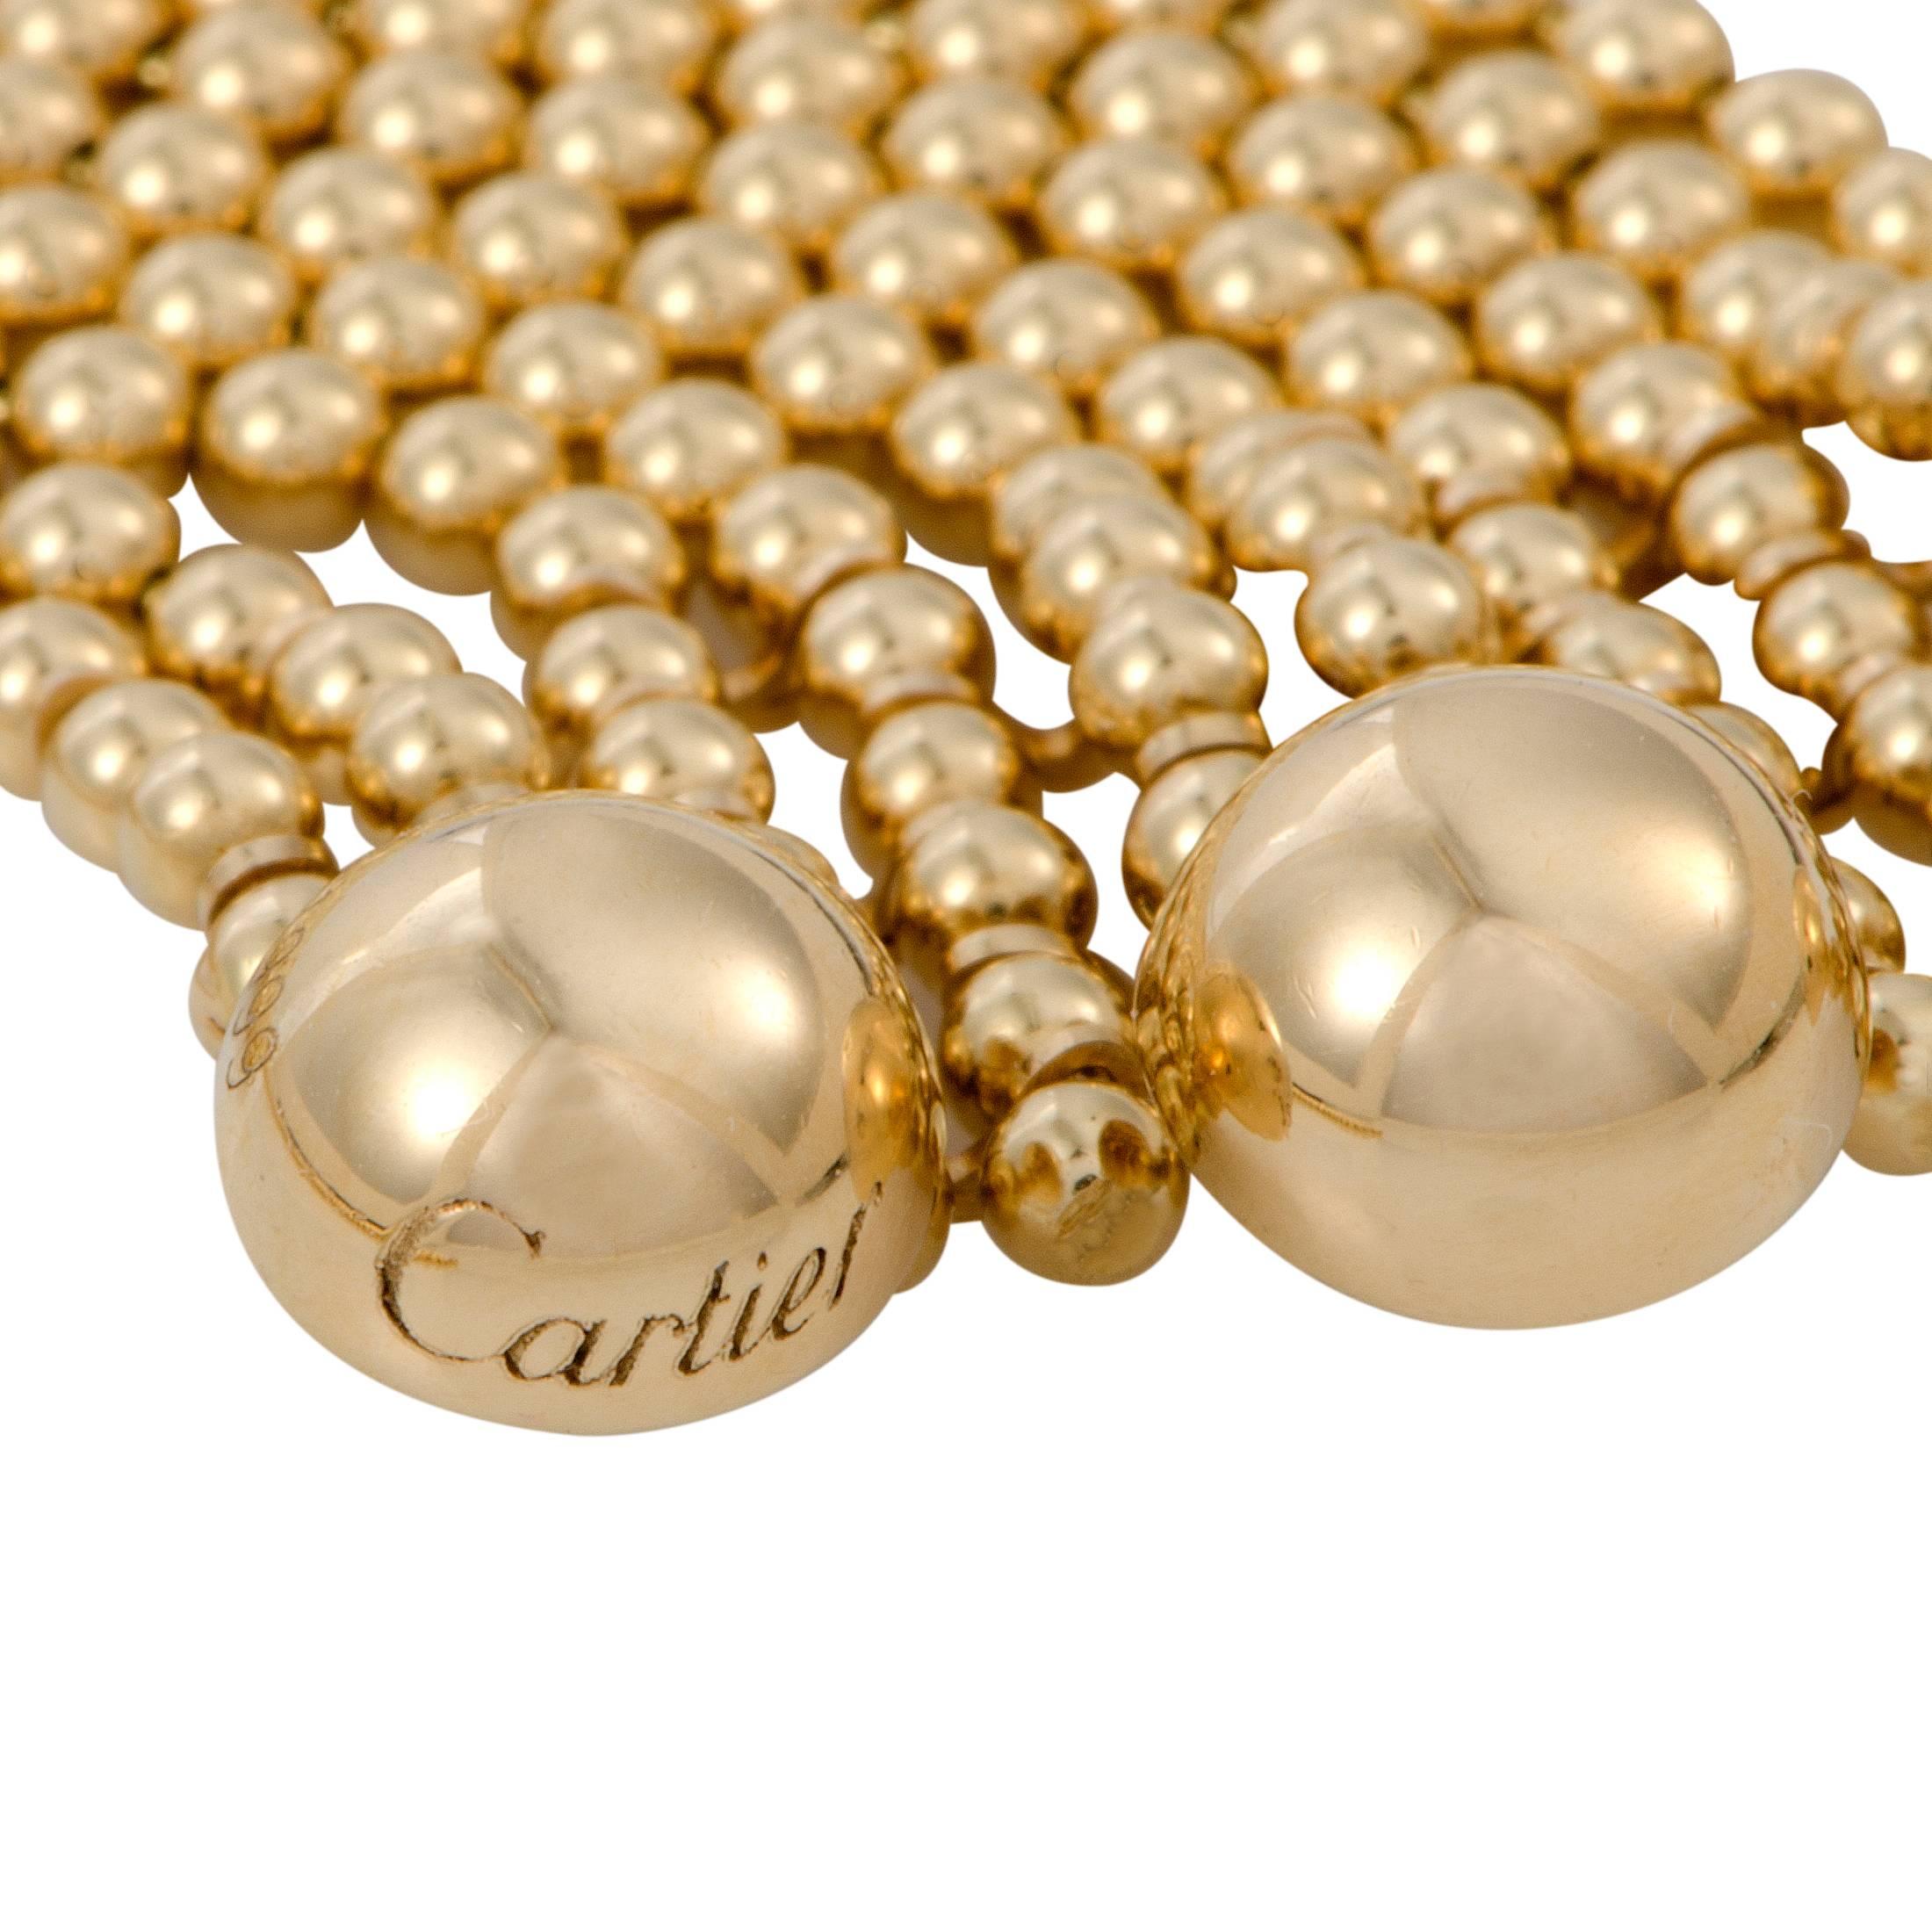 Women's Draperie de Decolette 18K Yellow and White Gold Diamond Multi-Strand Necklace